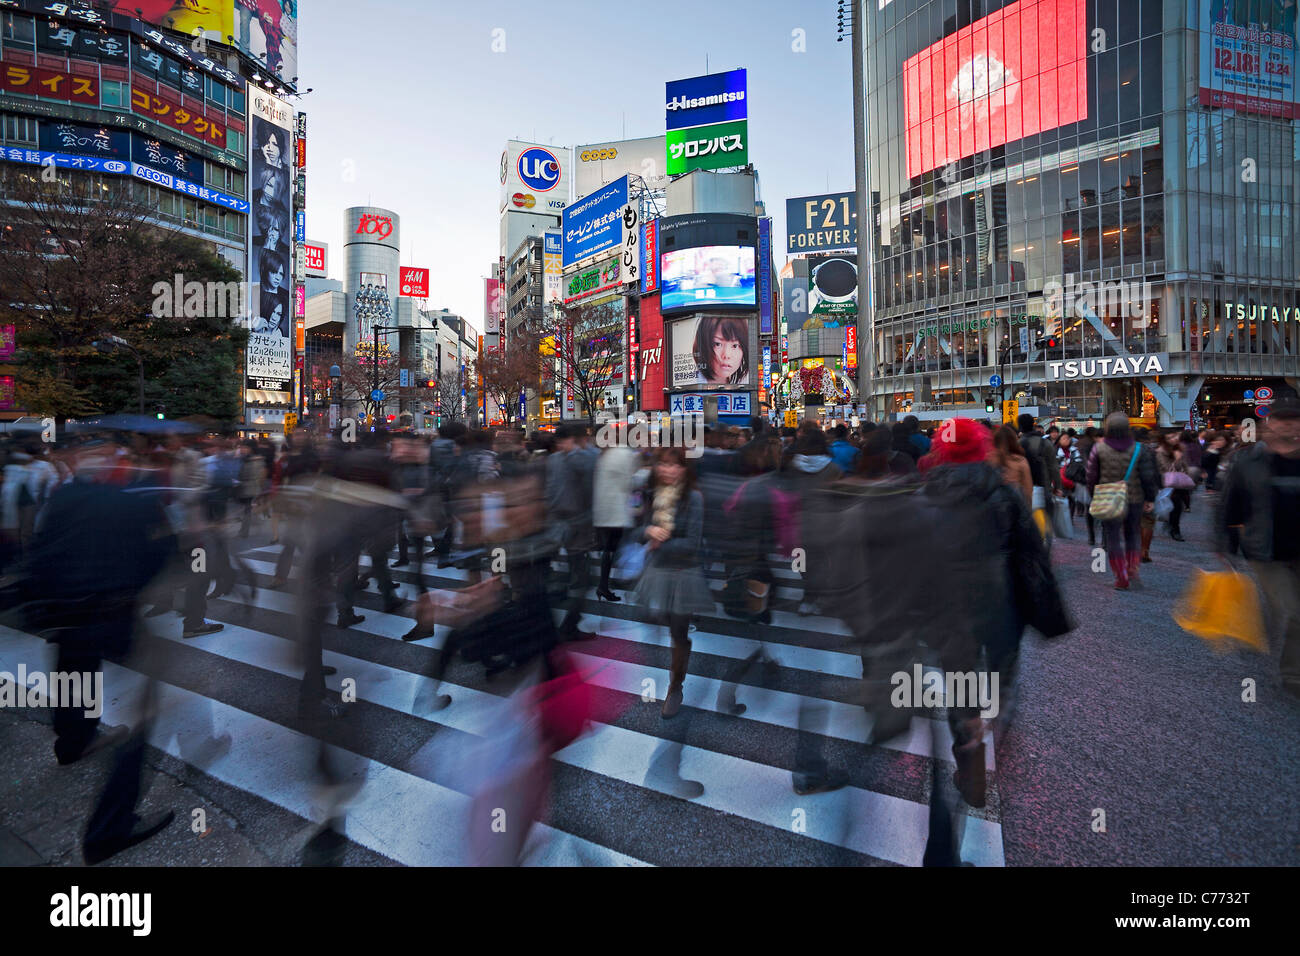 Asien, Japan, Tokio, Shibuya, Kreuzung Shibuya - Massen von Menschen, die Überquerung der berühmten Kreuzung im Zentrum von Shibuya Stockfoto